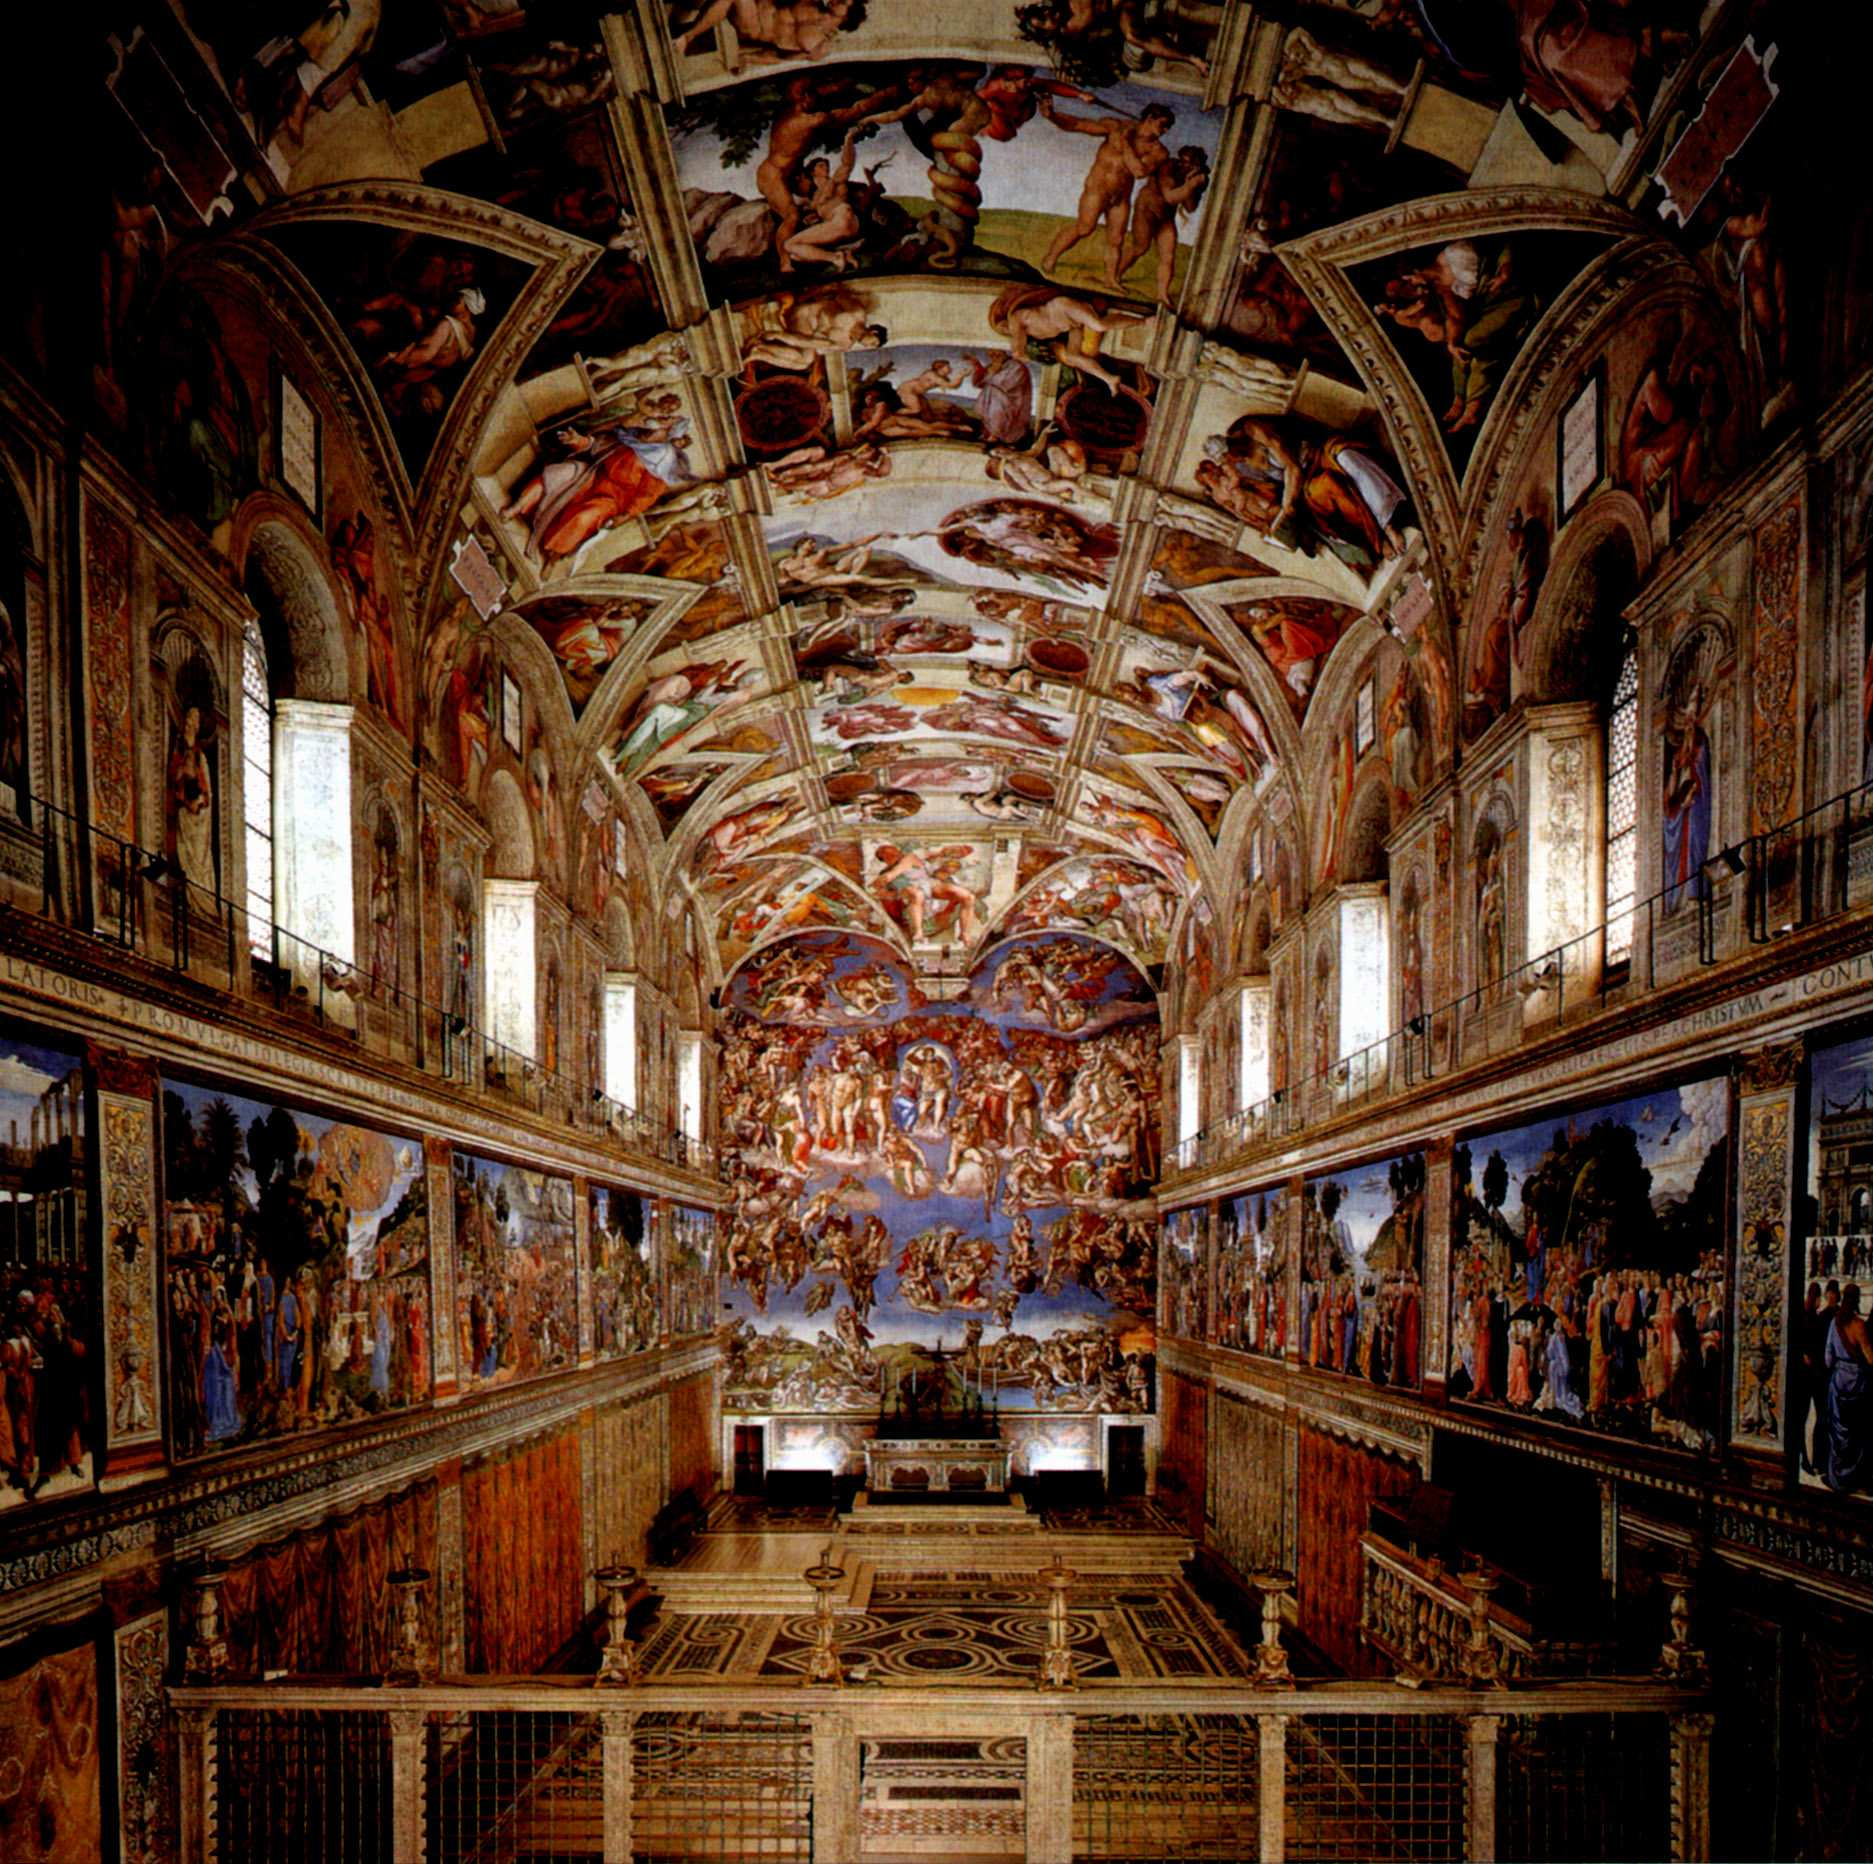 Die Vatikanischen Museen Die Vatikanischen Museen sind die weltweit reichste Sammlung der klassischen Kunst. Die Geschichte der vatikanischen Sammlungen begann im Jahre 1503, als Julius II.